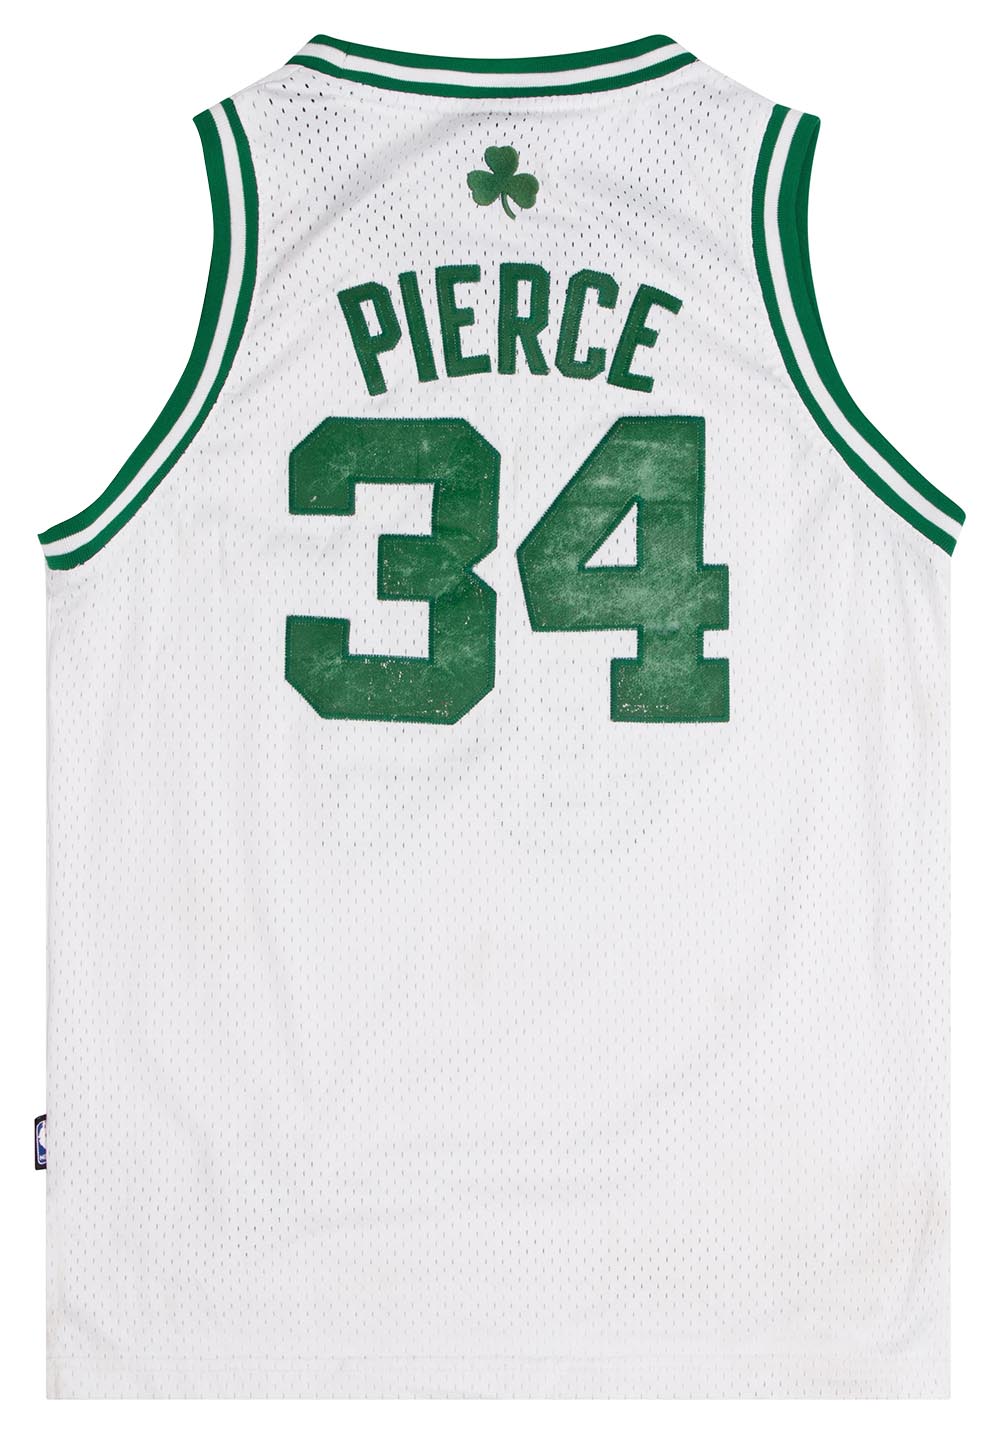 adidas, Shirts & Tops, Adidas Nba Jersey Boston Celtics 34 Paul Pierce  Youth Child 2t